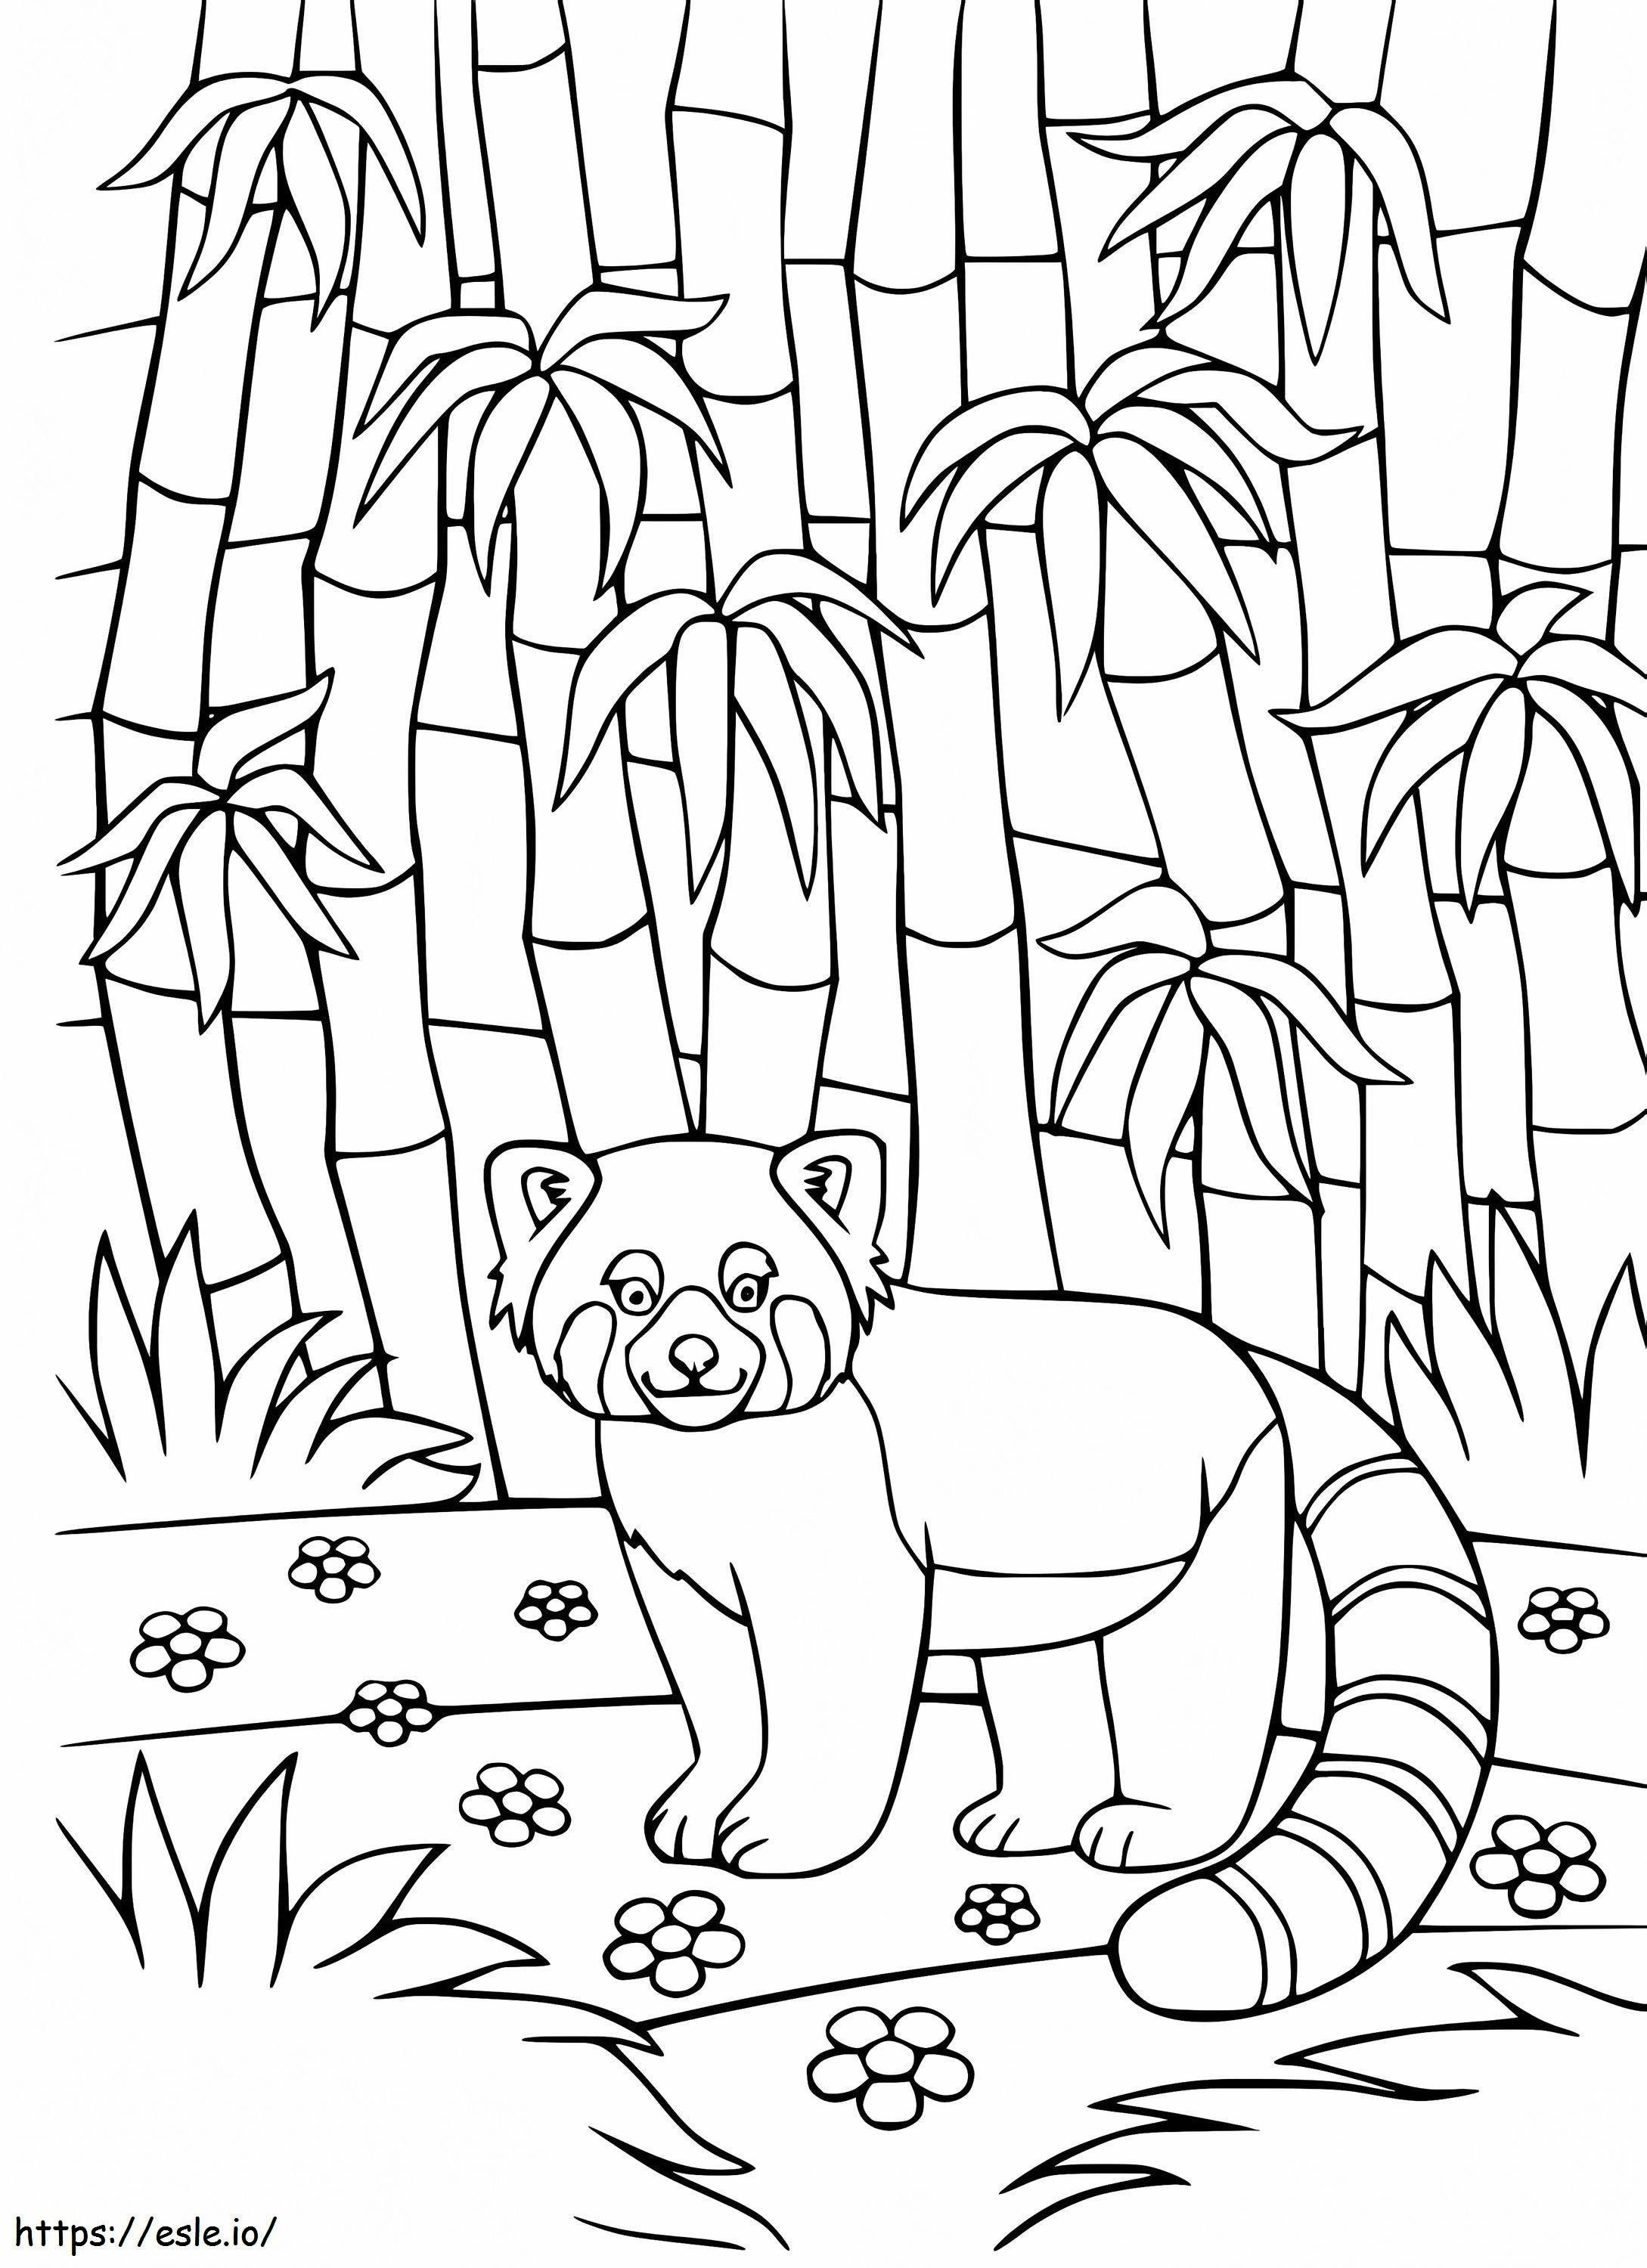 Czerwona Panda W Bambusowym Lesie kolorowanka